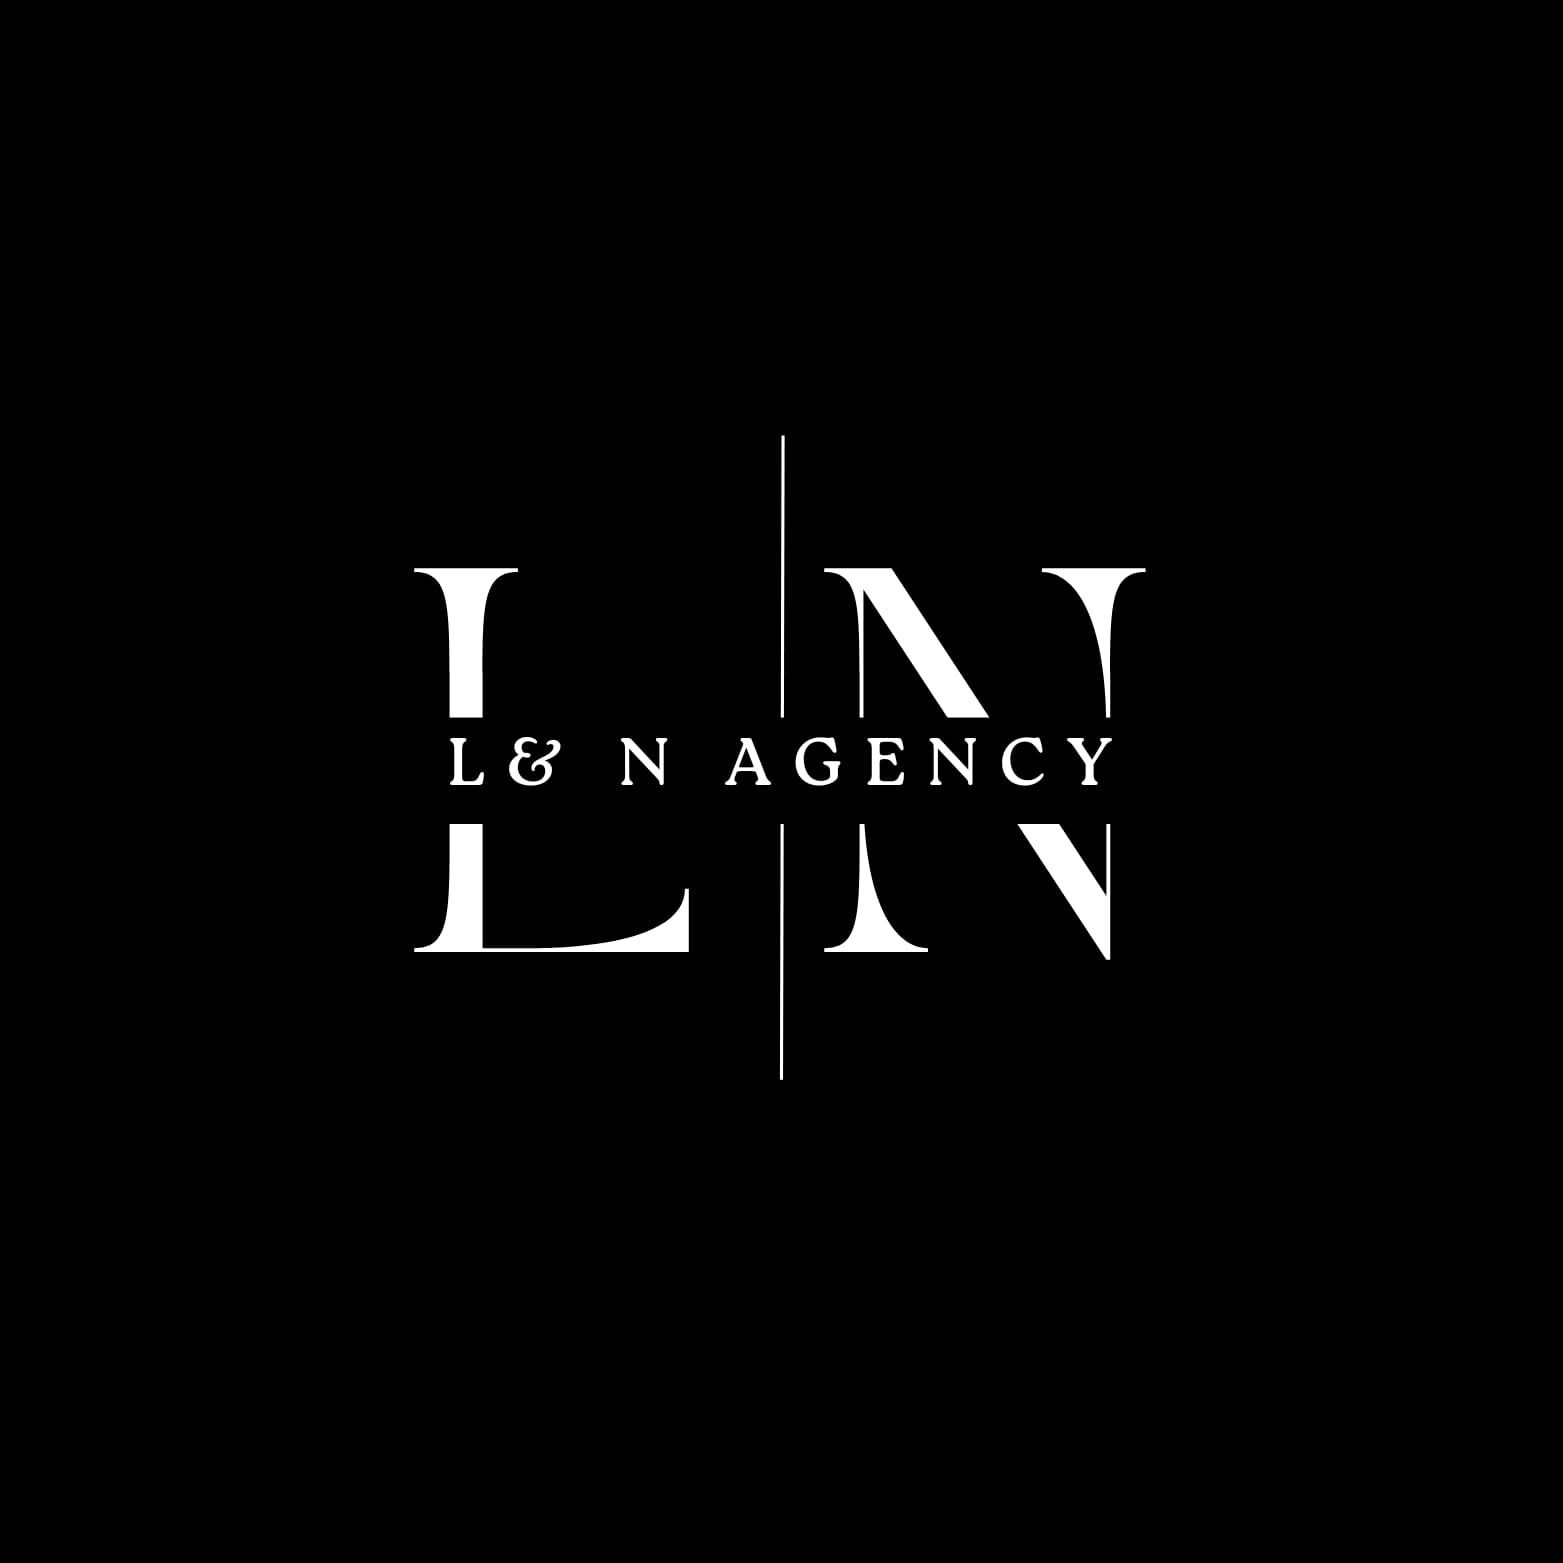 L & N  Agency